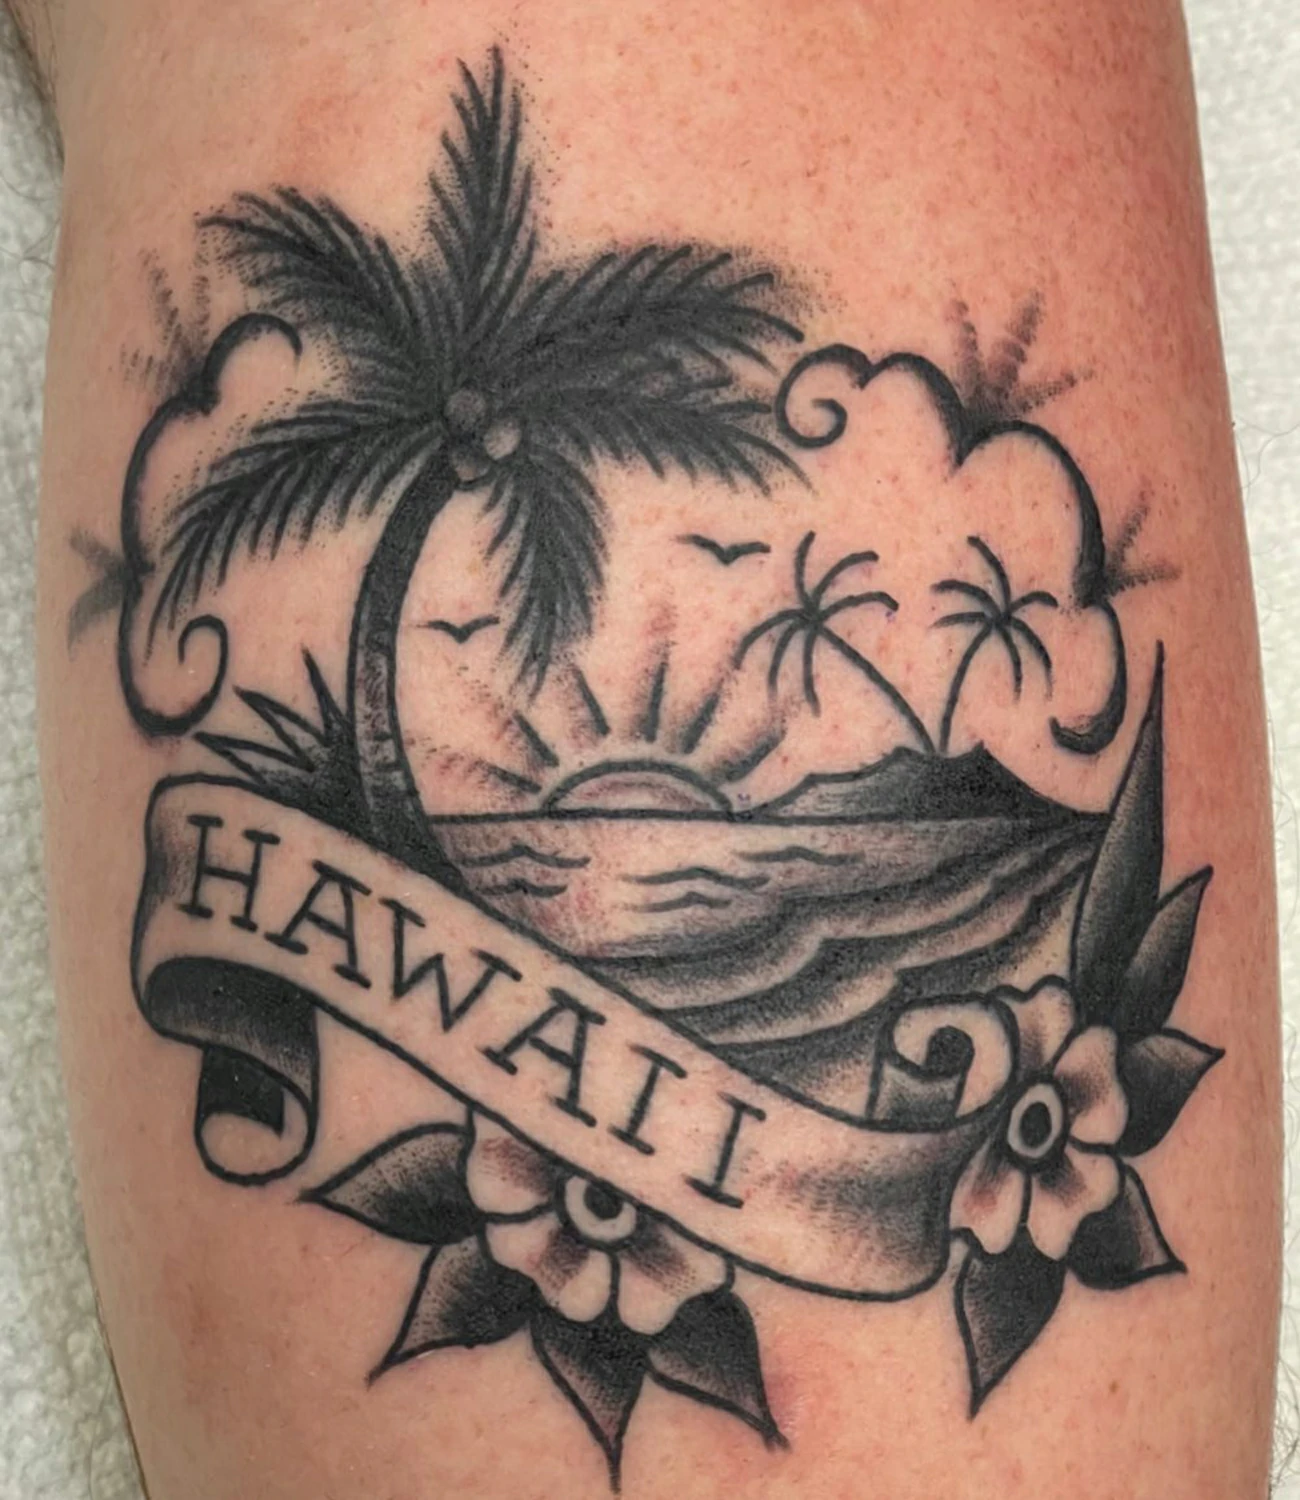 Sailor Jerry Hawaii Tattoo